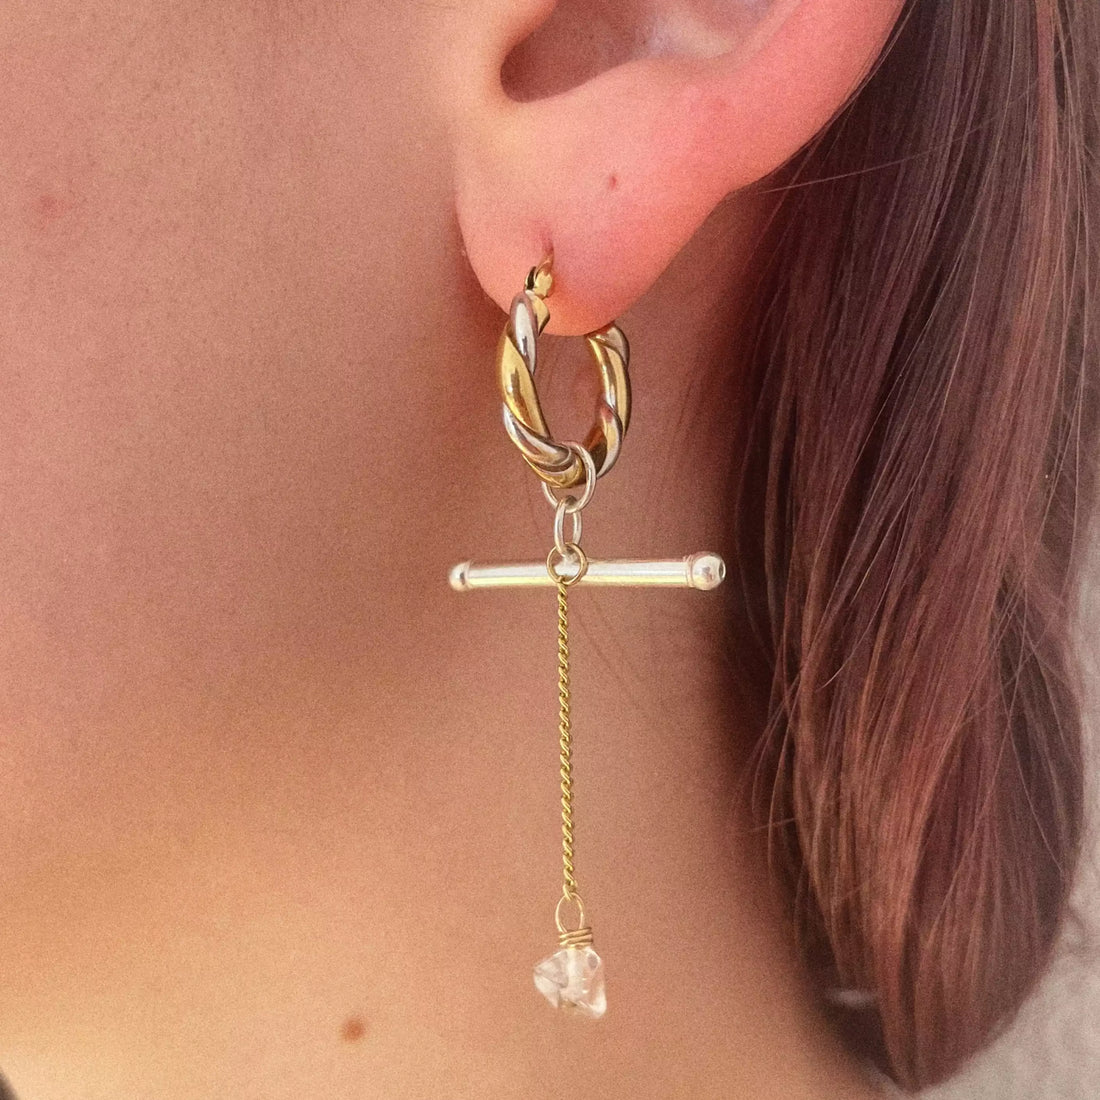 La deuxième boucle d'oreille portée. Elle est aussi pendante, avec une créoles dorée et argentée, un élément décoratif en argent, une chaîne suspendue plaquée or et un quartz transparent à l'extrémité.